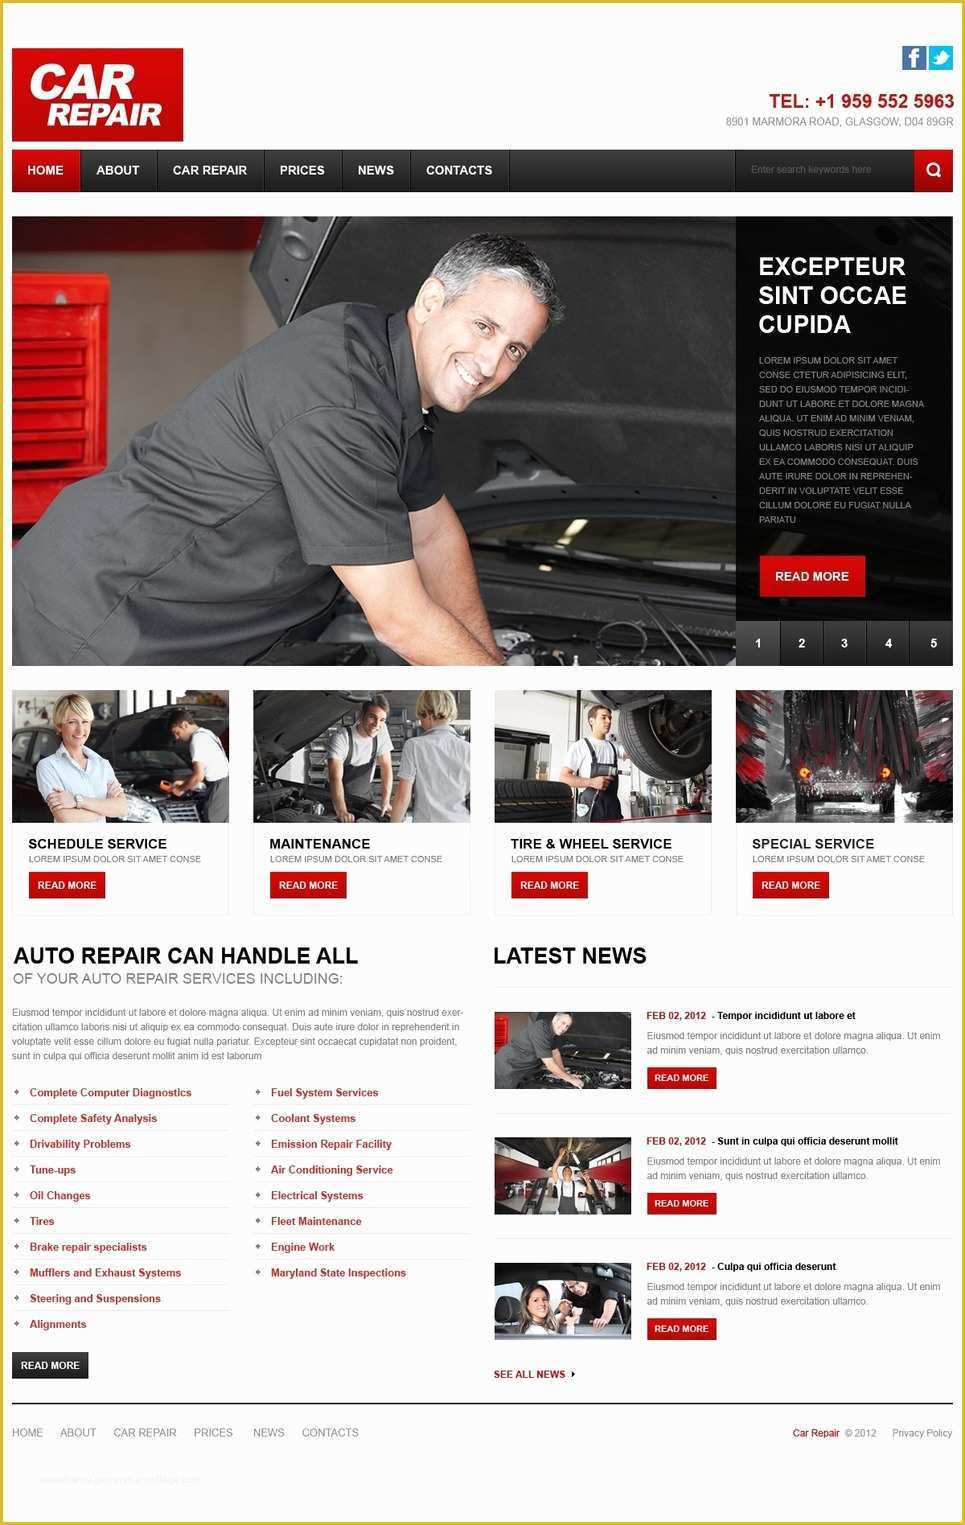 Car Repair Responsive Website Template Free Download Of Car Repair Responsive Website Template